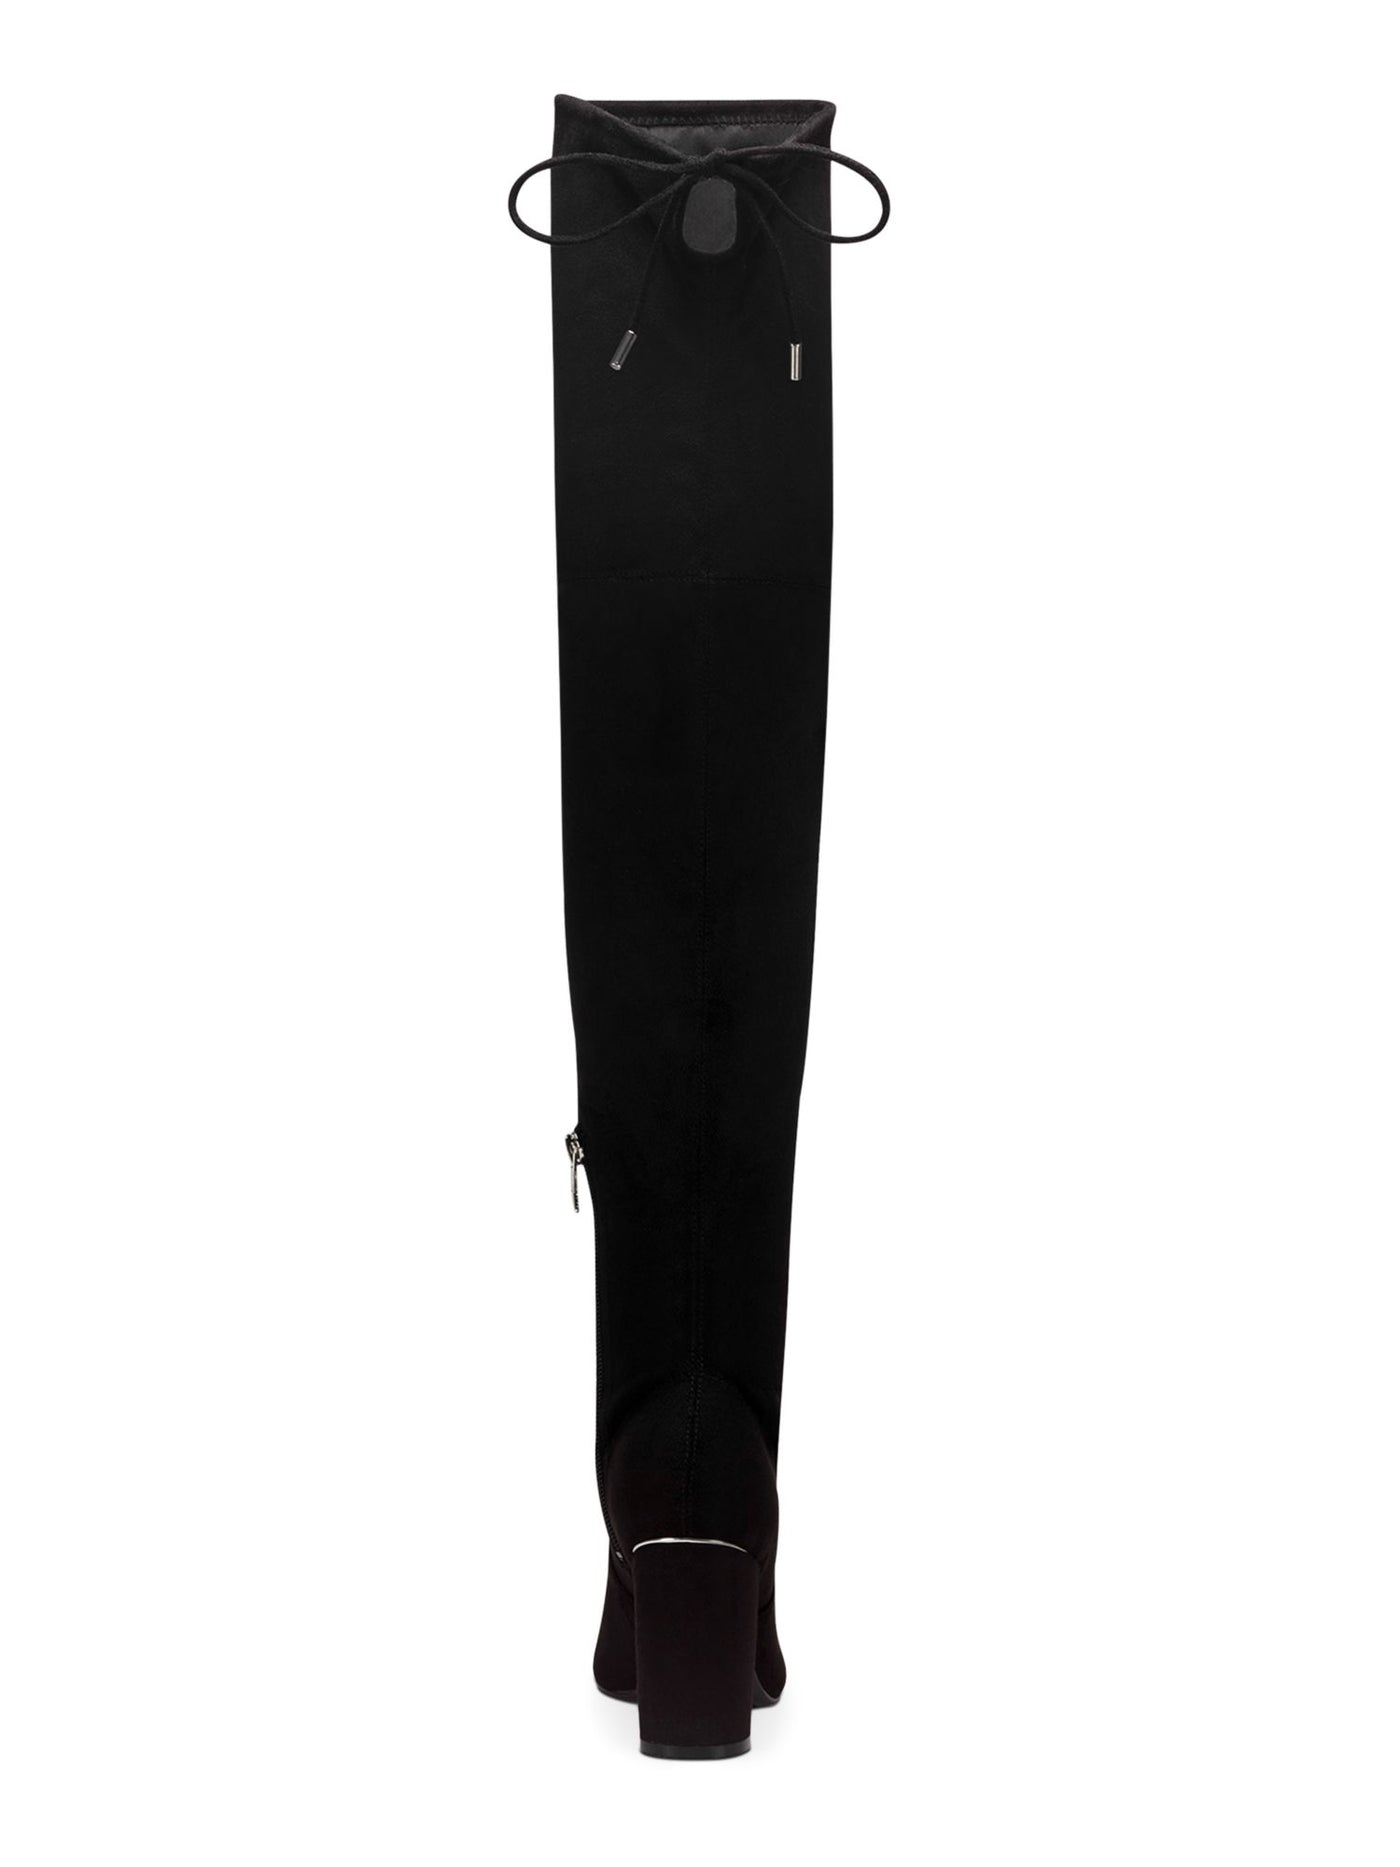 MARC FISHER Womens Black Tie Detail Water Resistant Comfort Vany Pointed Toe Block Heel Zip-Up Heeled Boots 5.5 M